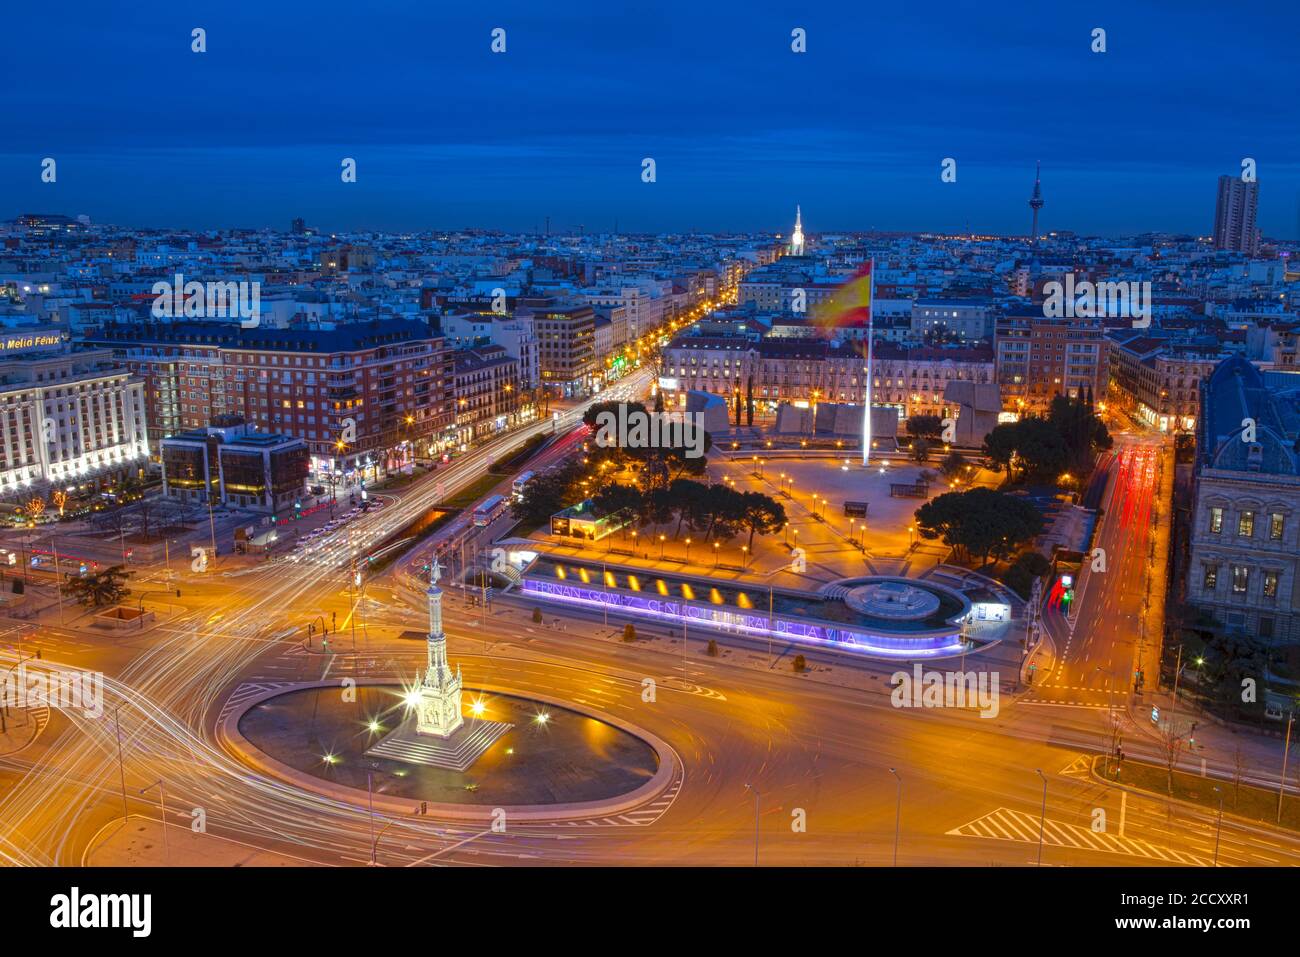 Leichte Fahrspuren, nächtlicher Straßenverkehr auf der Plaza de Colon, Madrid, Spanien Stockfoto